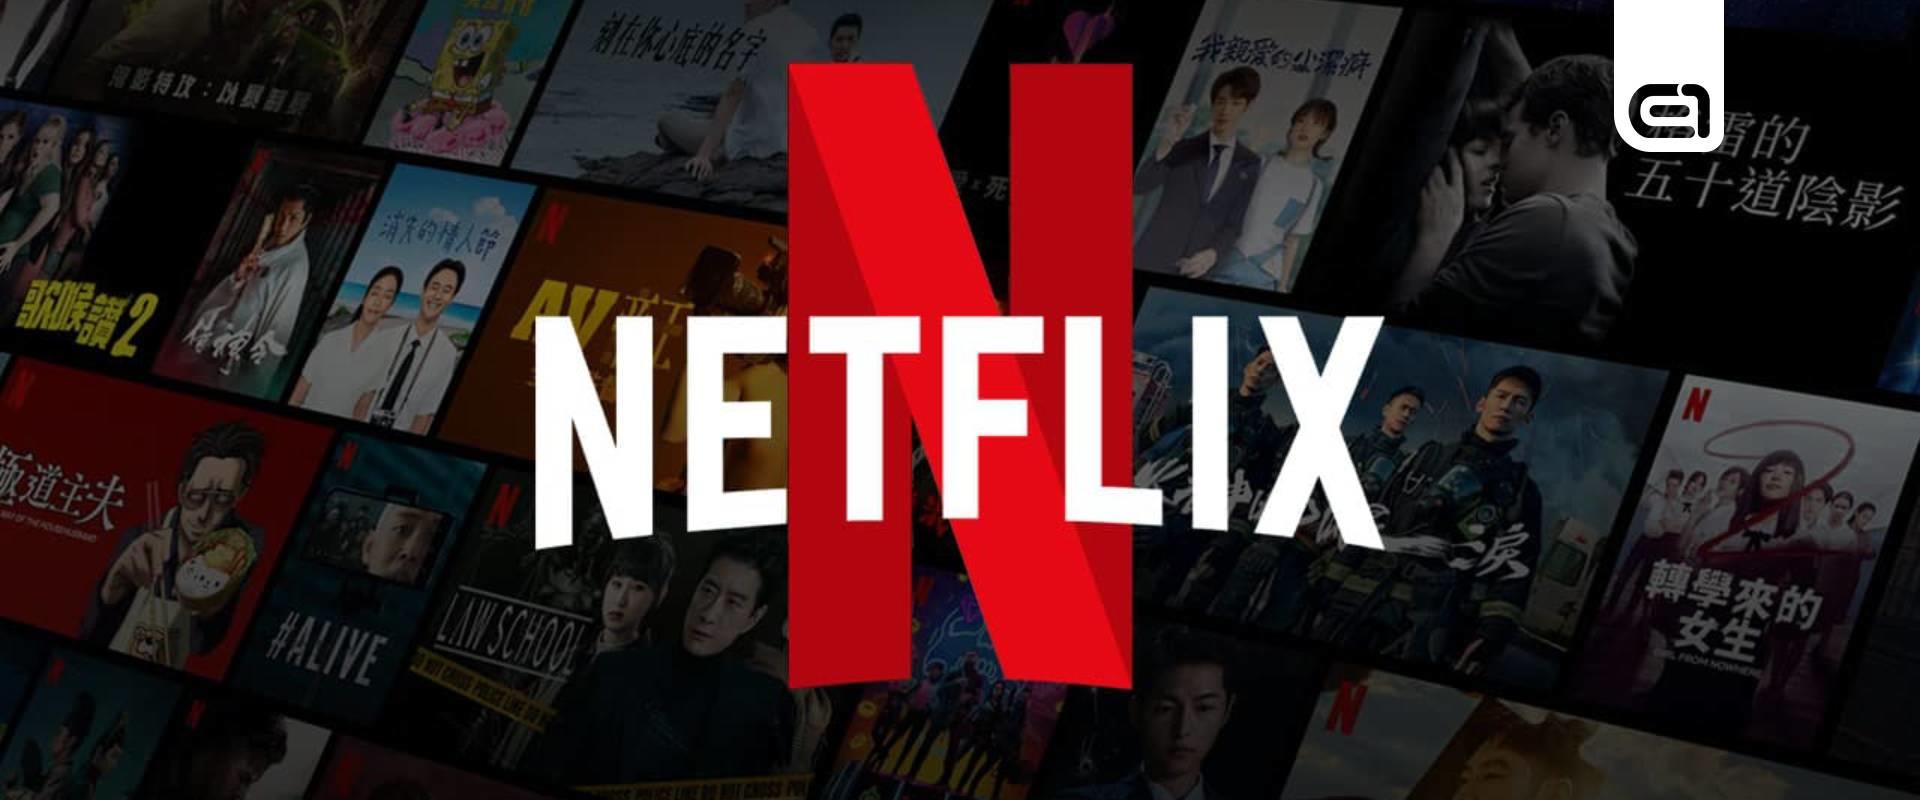 Dacára a reklámoknak, irdatlan nagyot nőtt a Netflix a tavalyi év alatt